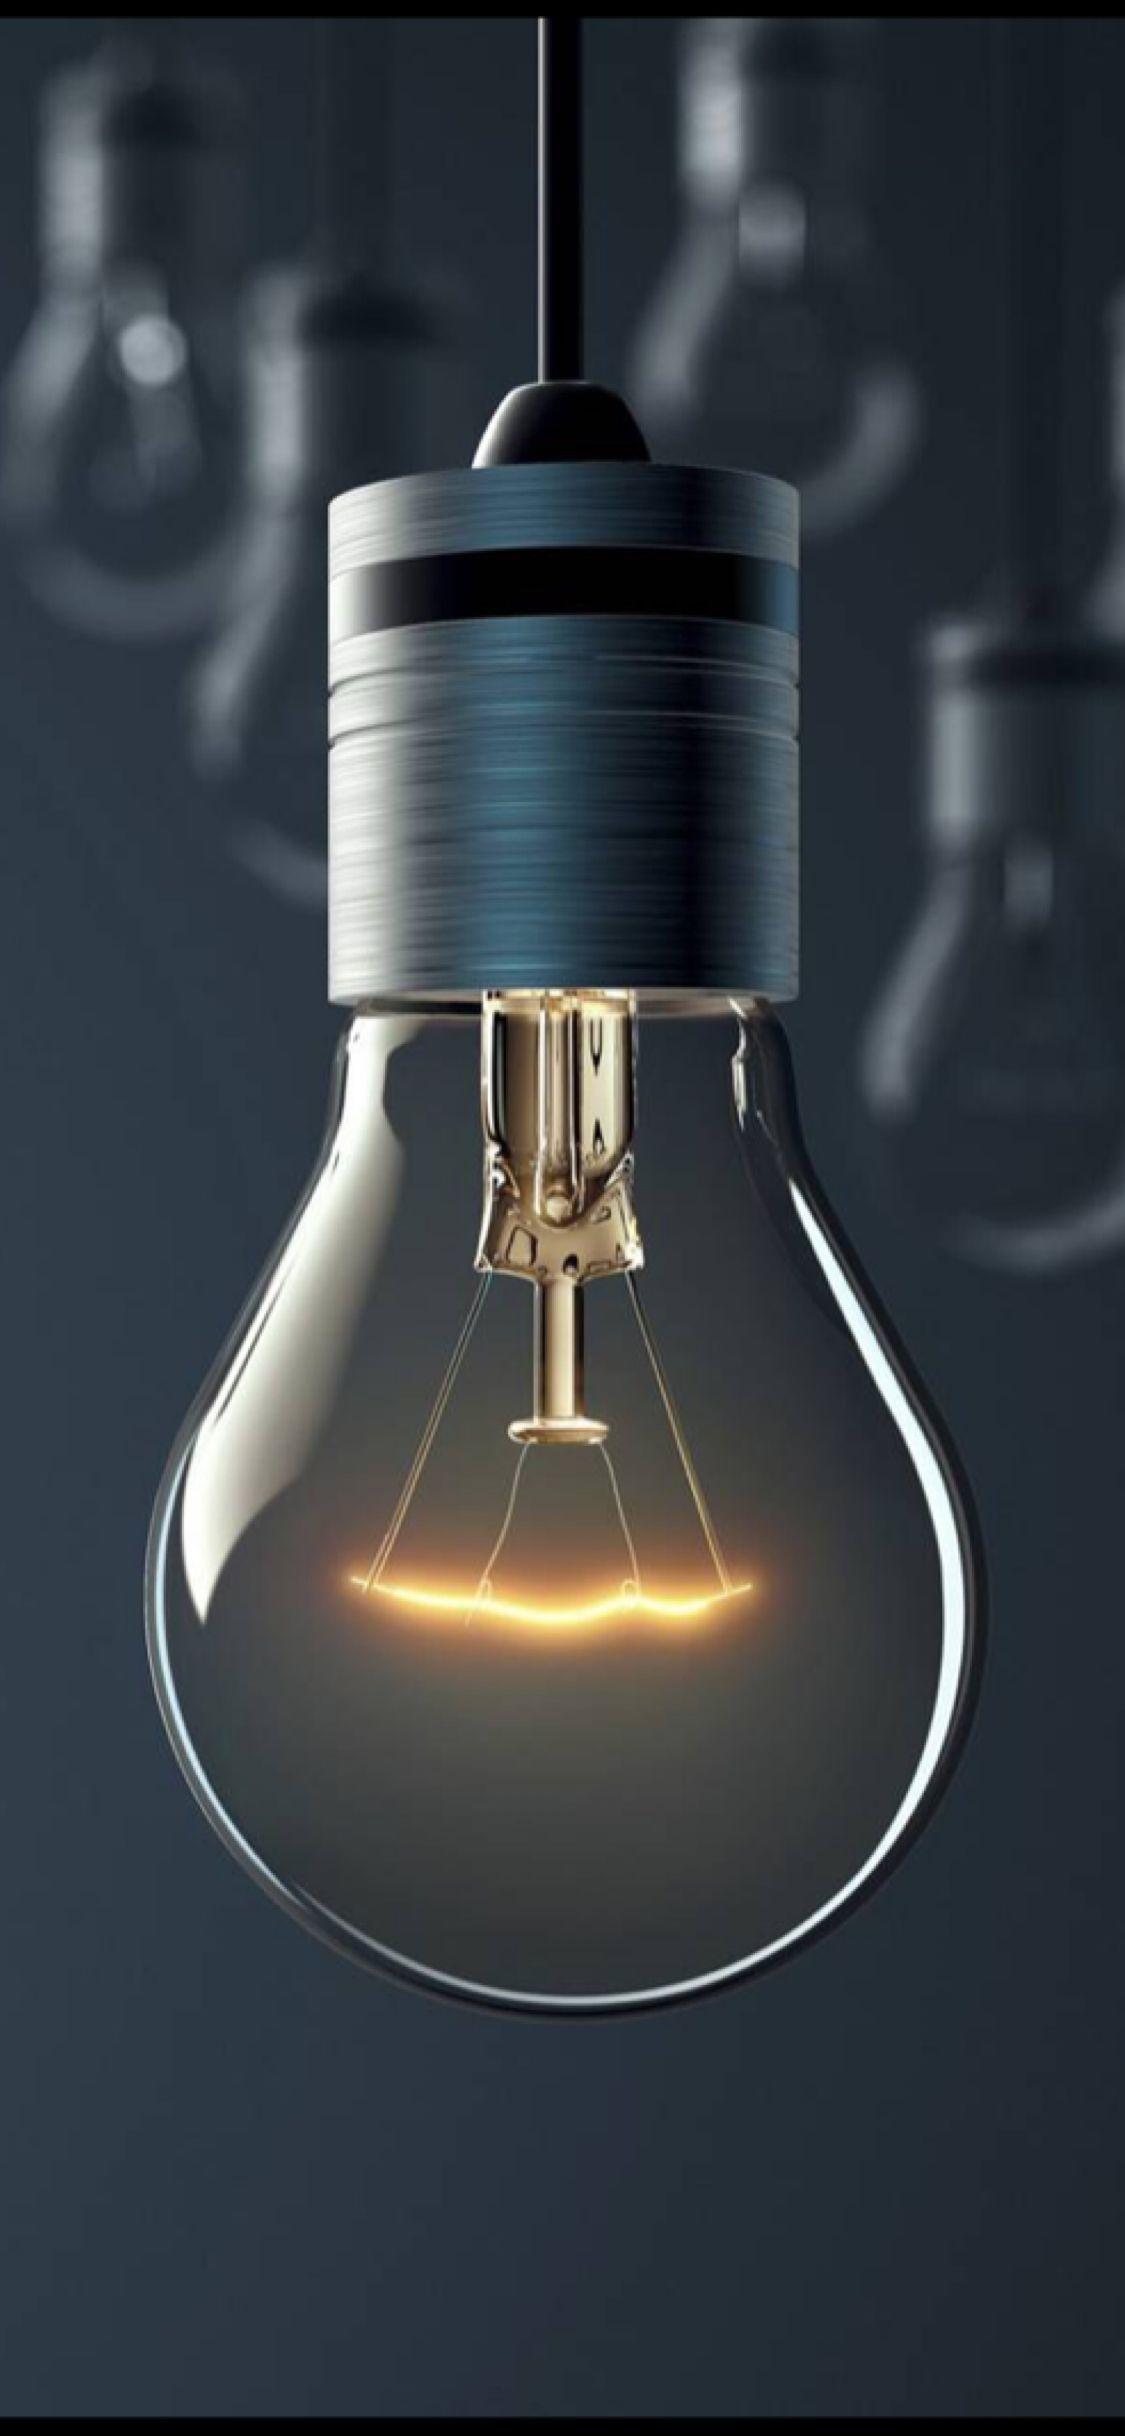 A bulb of light. Zollotech Wallpaper. iPhone wallpaper, Wallpaper